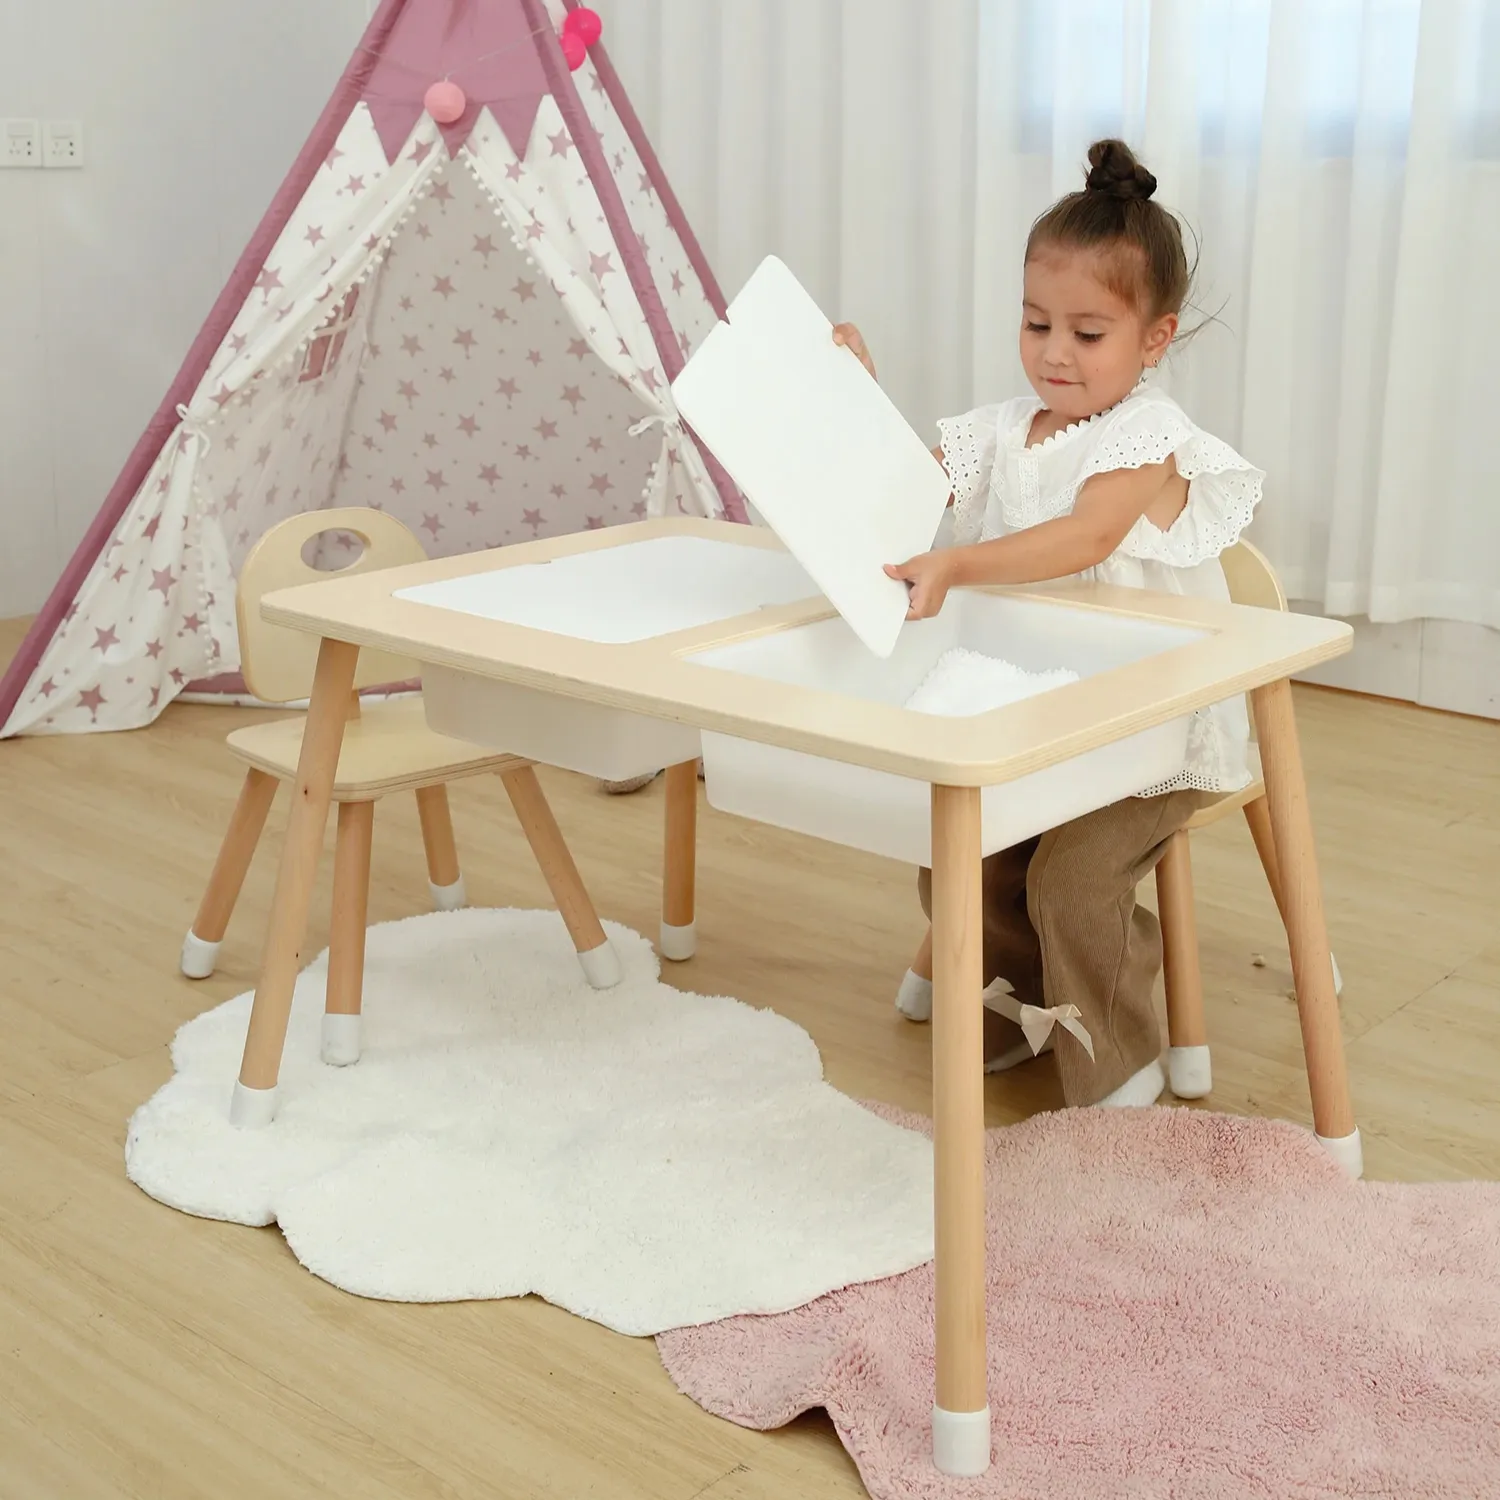 Набор деревянной мебели Монтессори для детей дошкольного возраста, обучающий Сенсорный игровой стол, песок и водный стол для детей